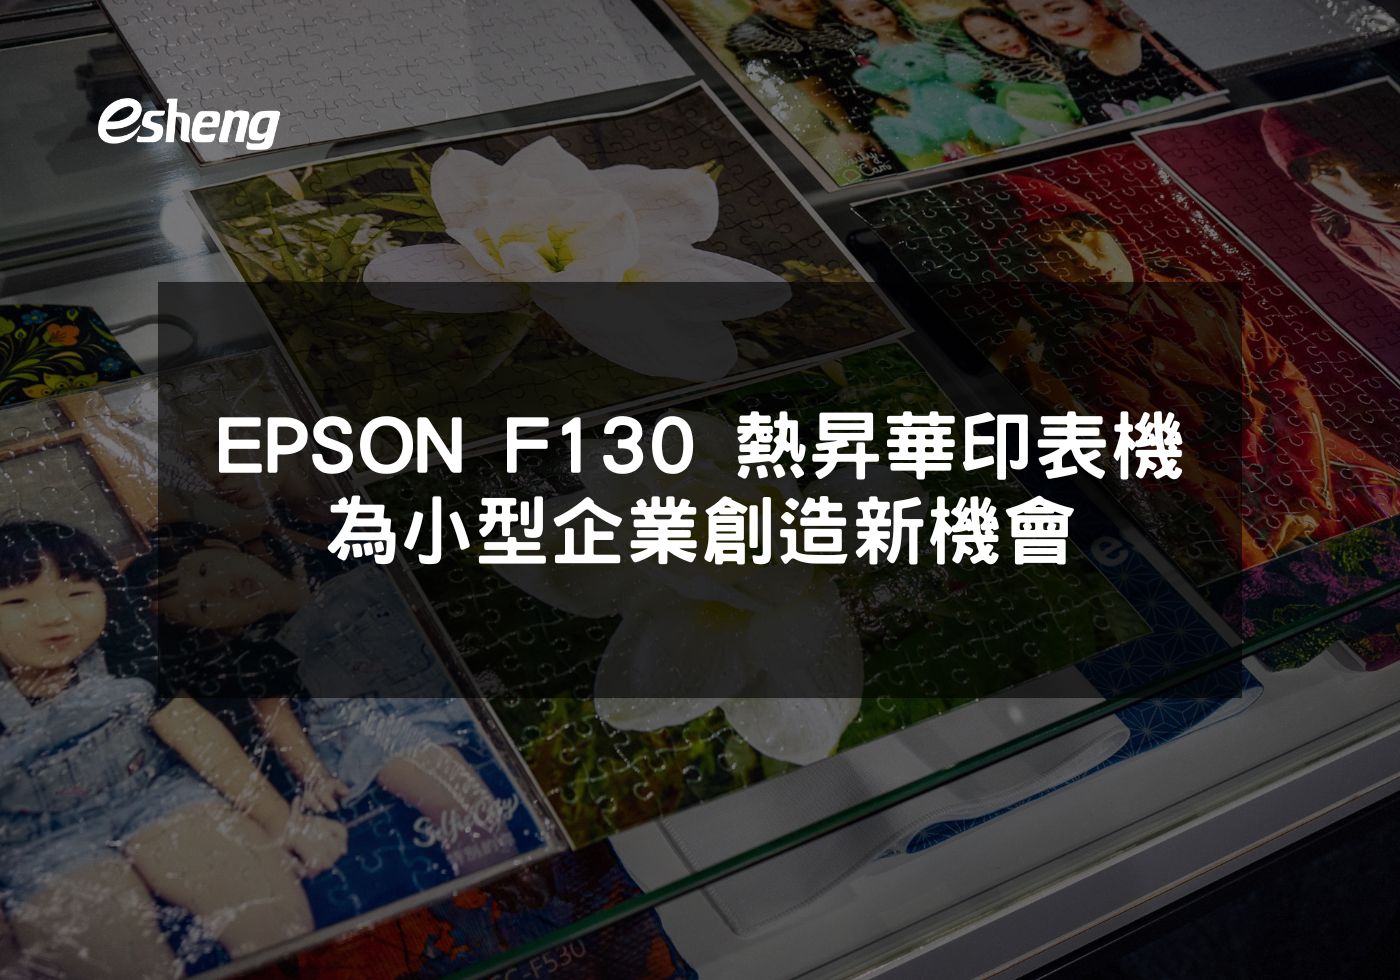 閱讀更多文章 EPSON F130 熱昇華印表機 為小型企業創造新機會